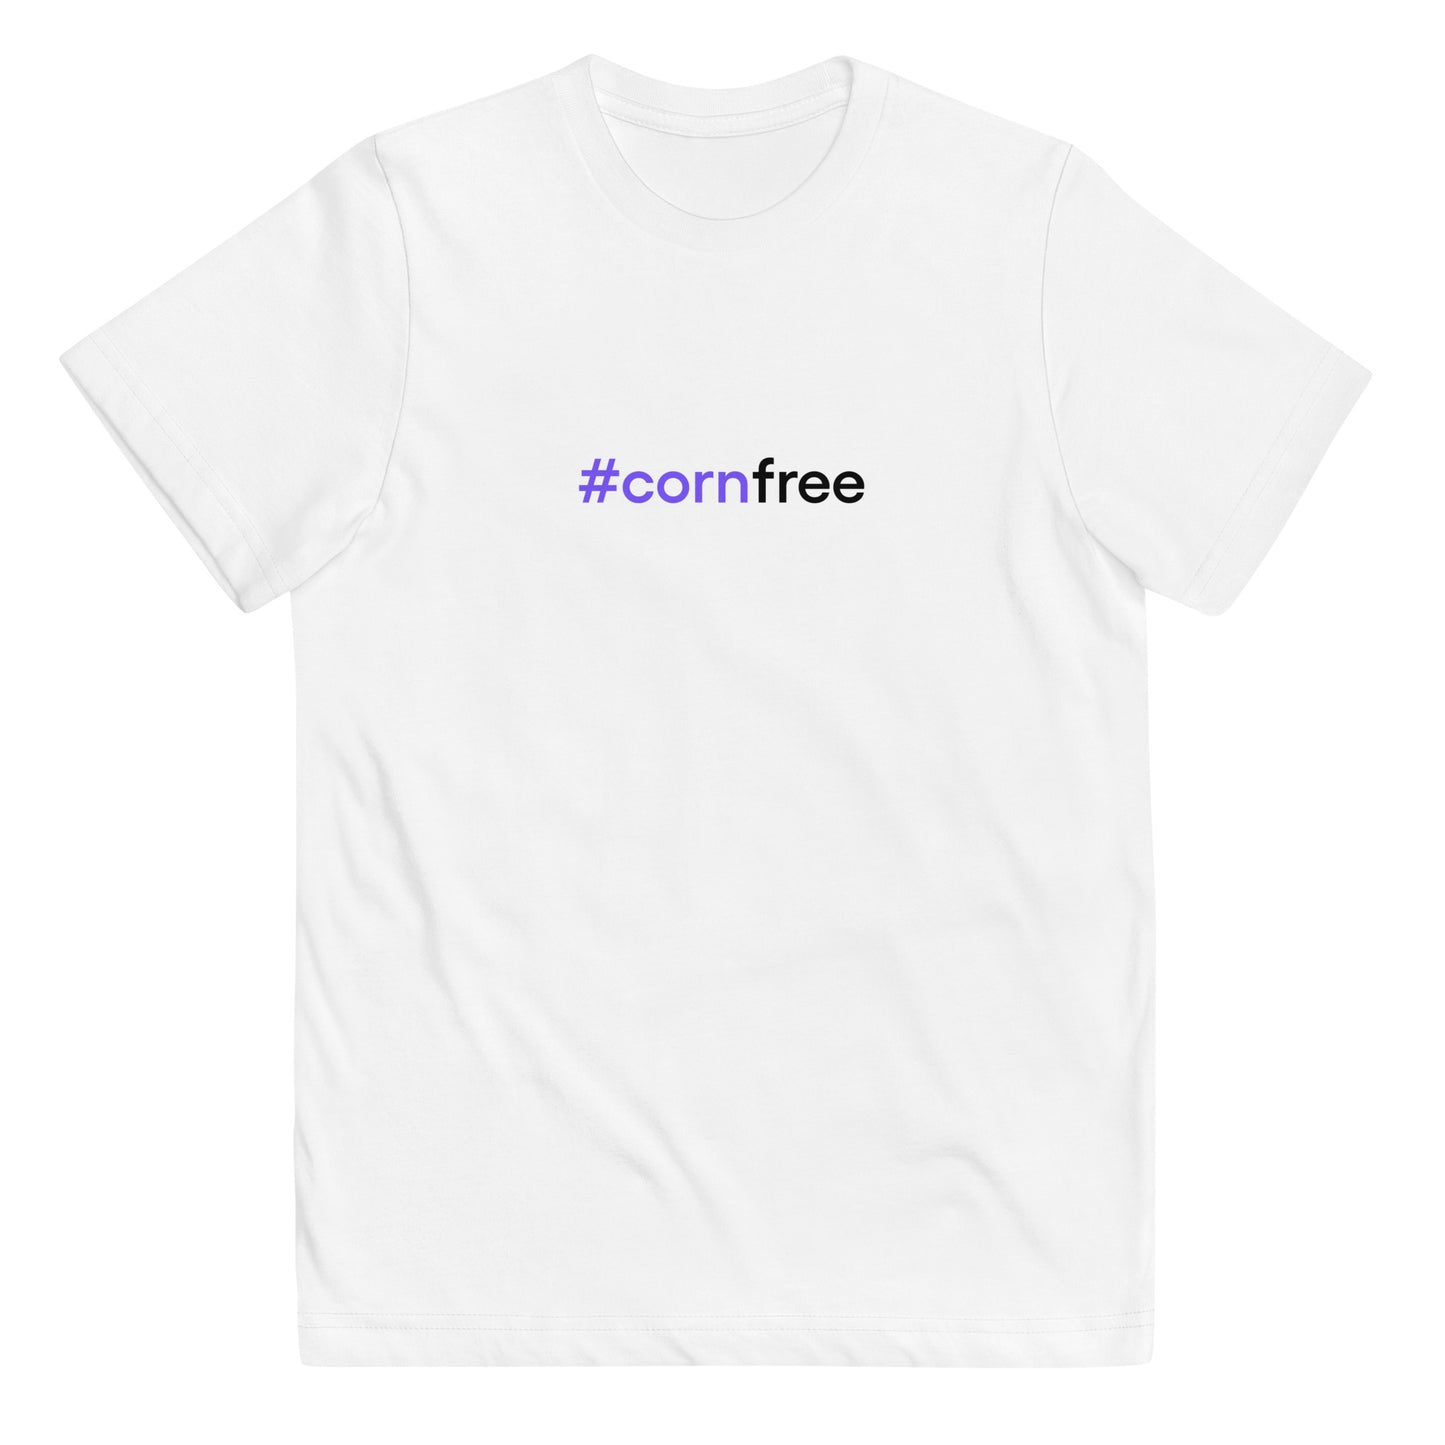 #cornfree | Youth jersey t-shirt